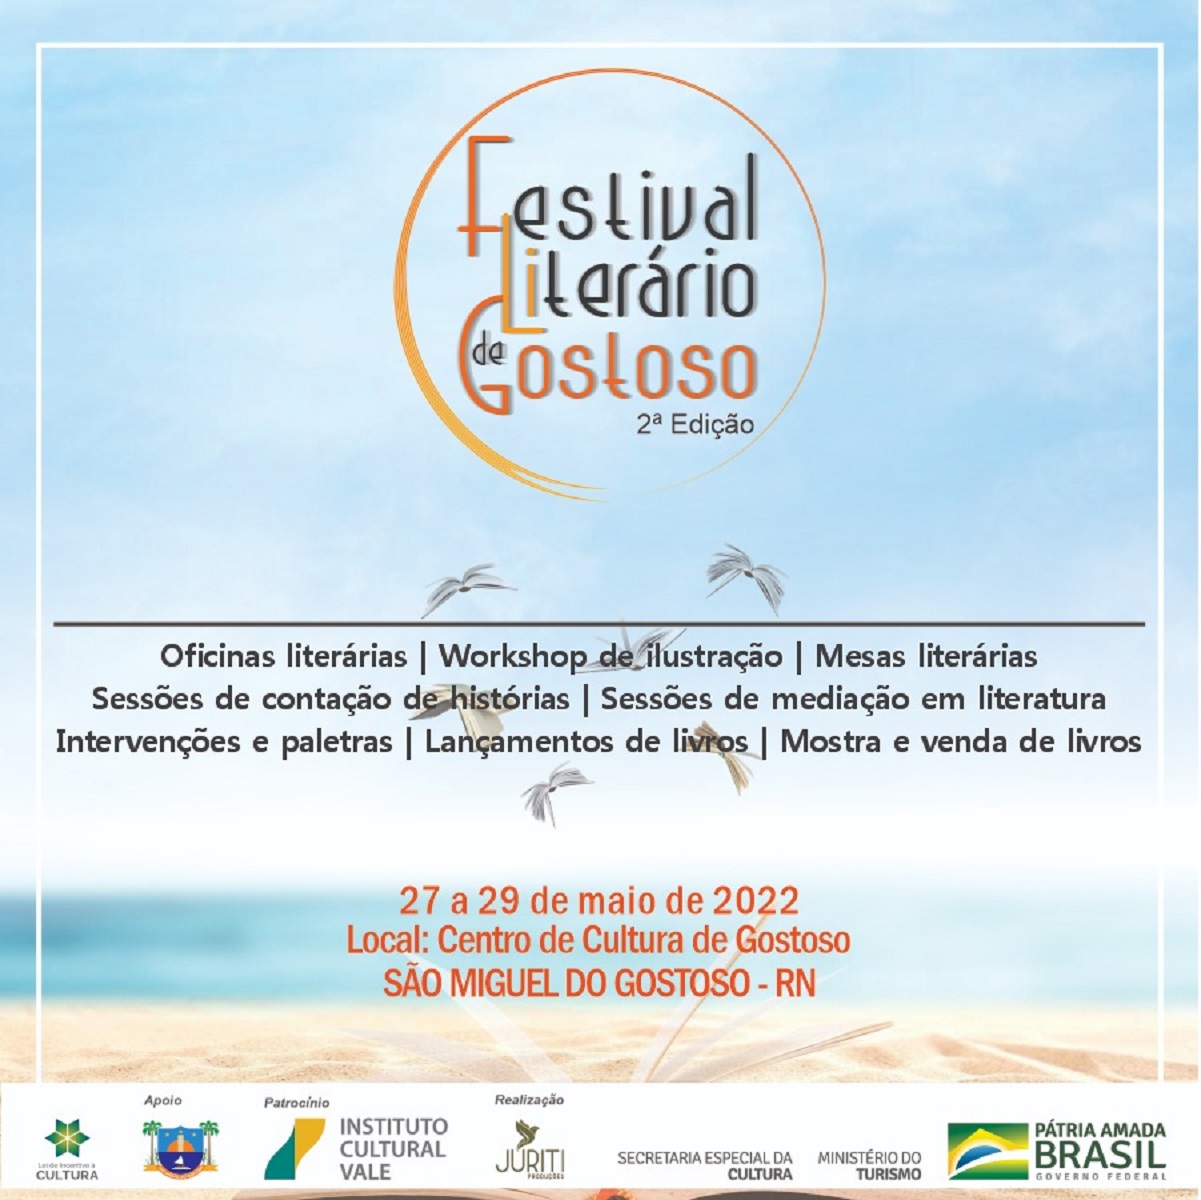 Festival Literário de Gostoso acontece entre 27 e 29 de maio; confira a programação